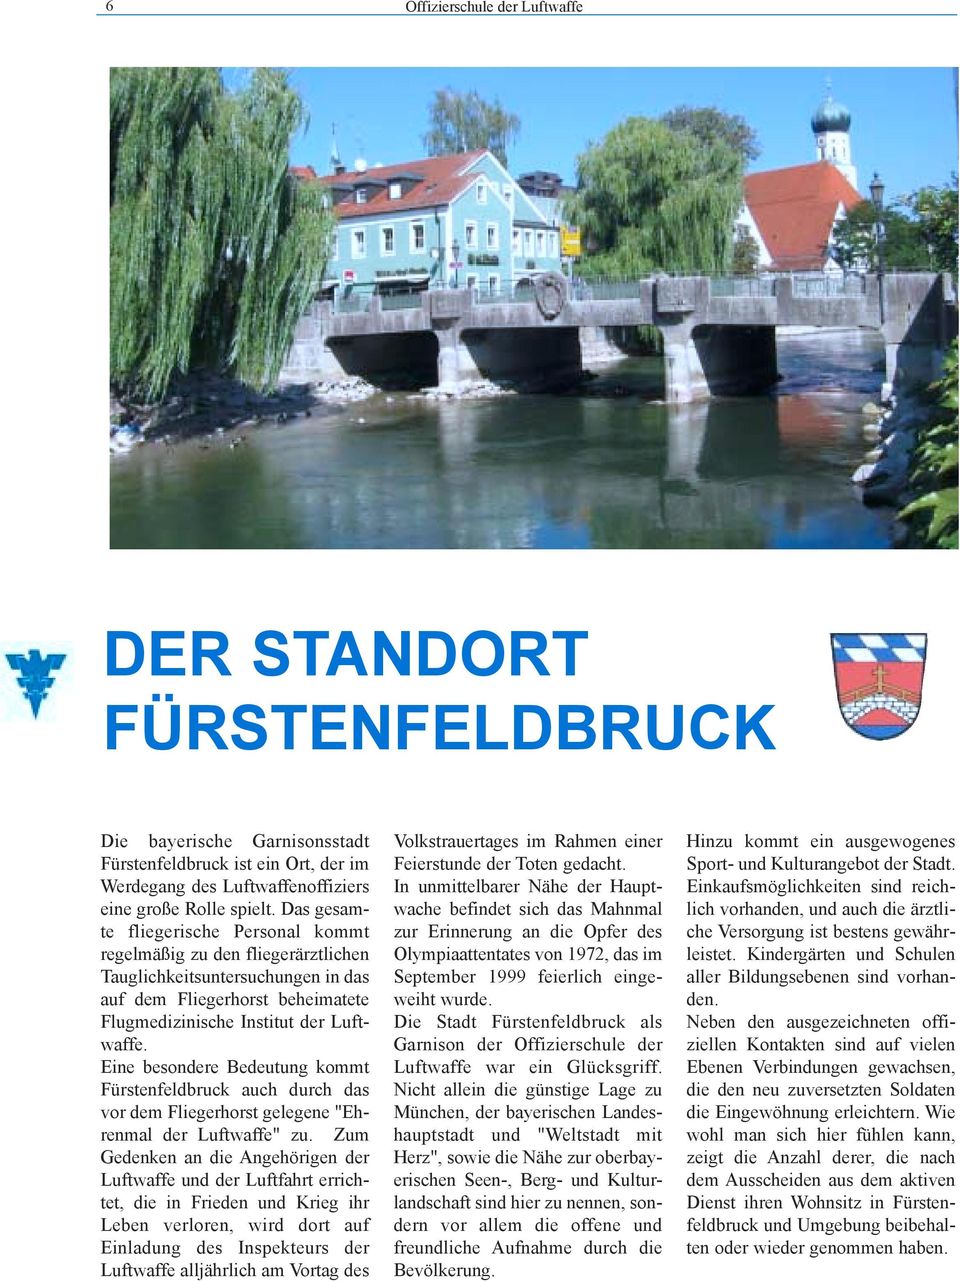 Eine besondere Bedeutung kommt Fürstenfeldbruck auch durch das vor dem Fliegerhorst gelegene "Ehrenmal der Luftwaffe" zu.